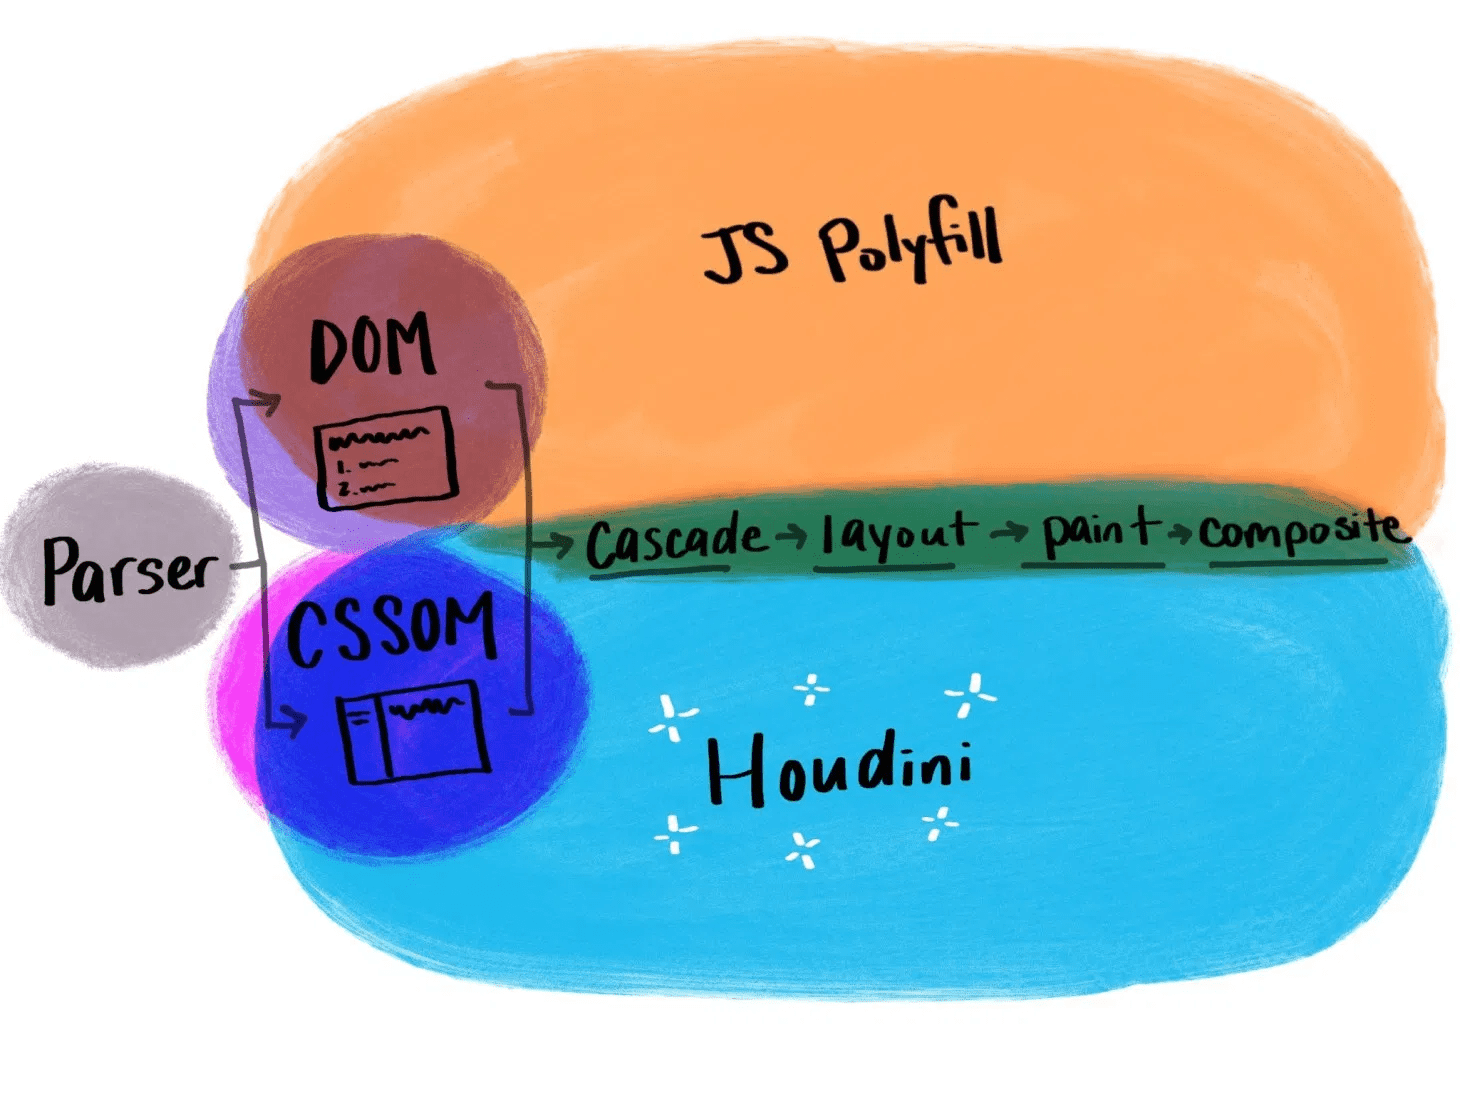 Abbildung, die zeigt, wie Houdini im Vergleich zu traditionellen JavaScript-Polyfills funktioniert.